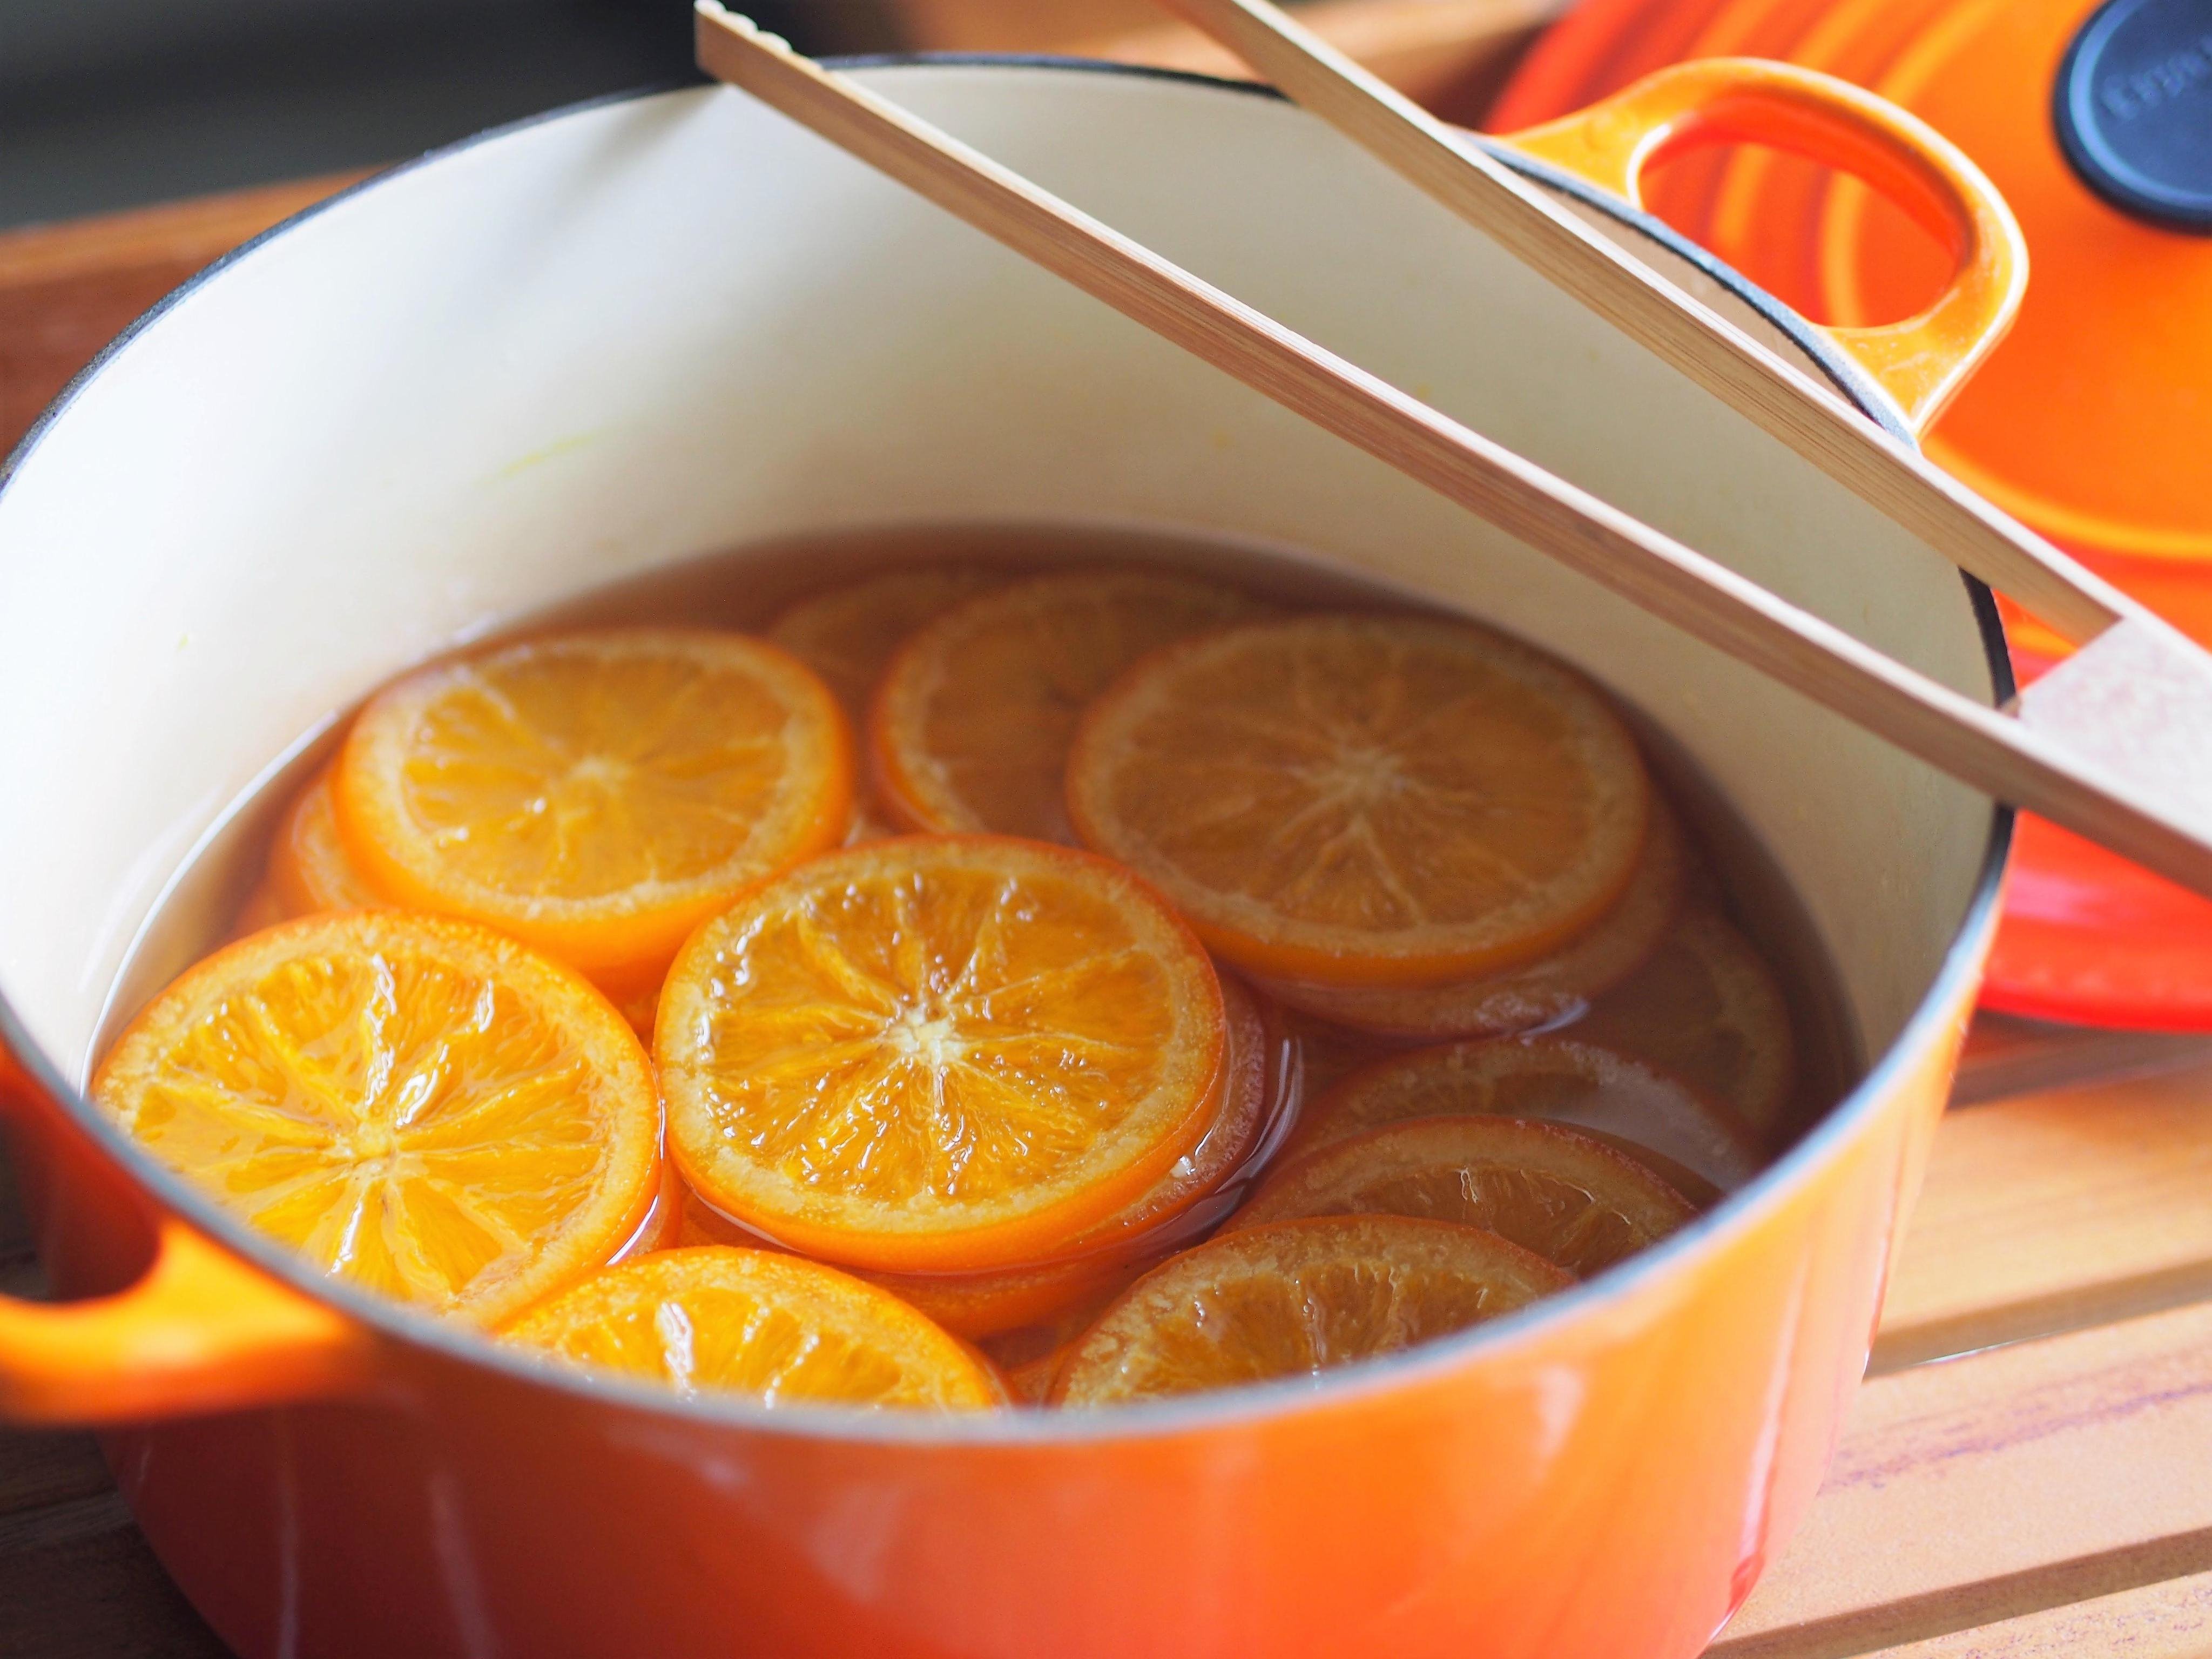 オレンジコンフィとオランジェットのレシピ 作り方 名田 緑 料理教室検索サイト クスパ